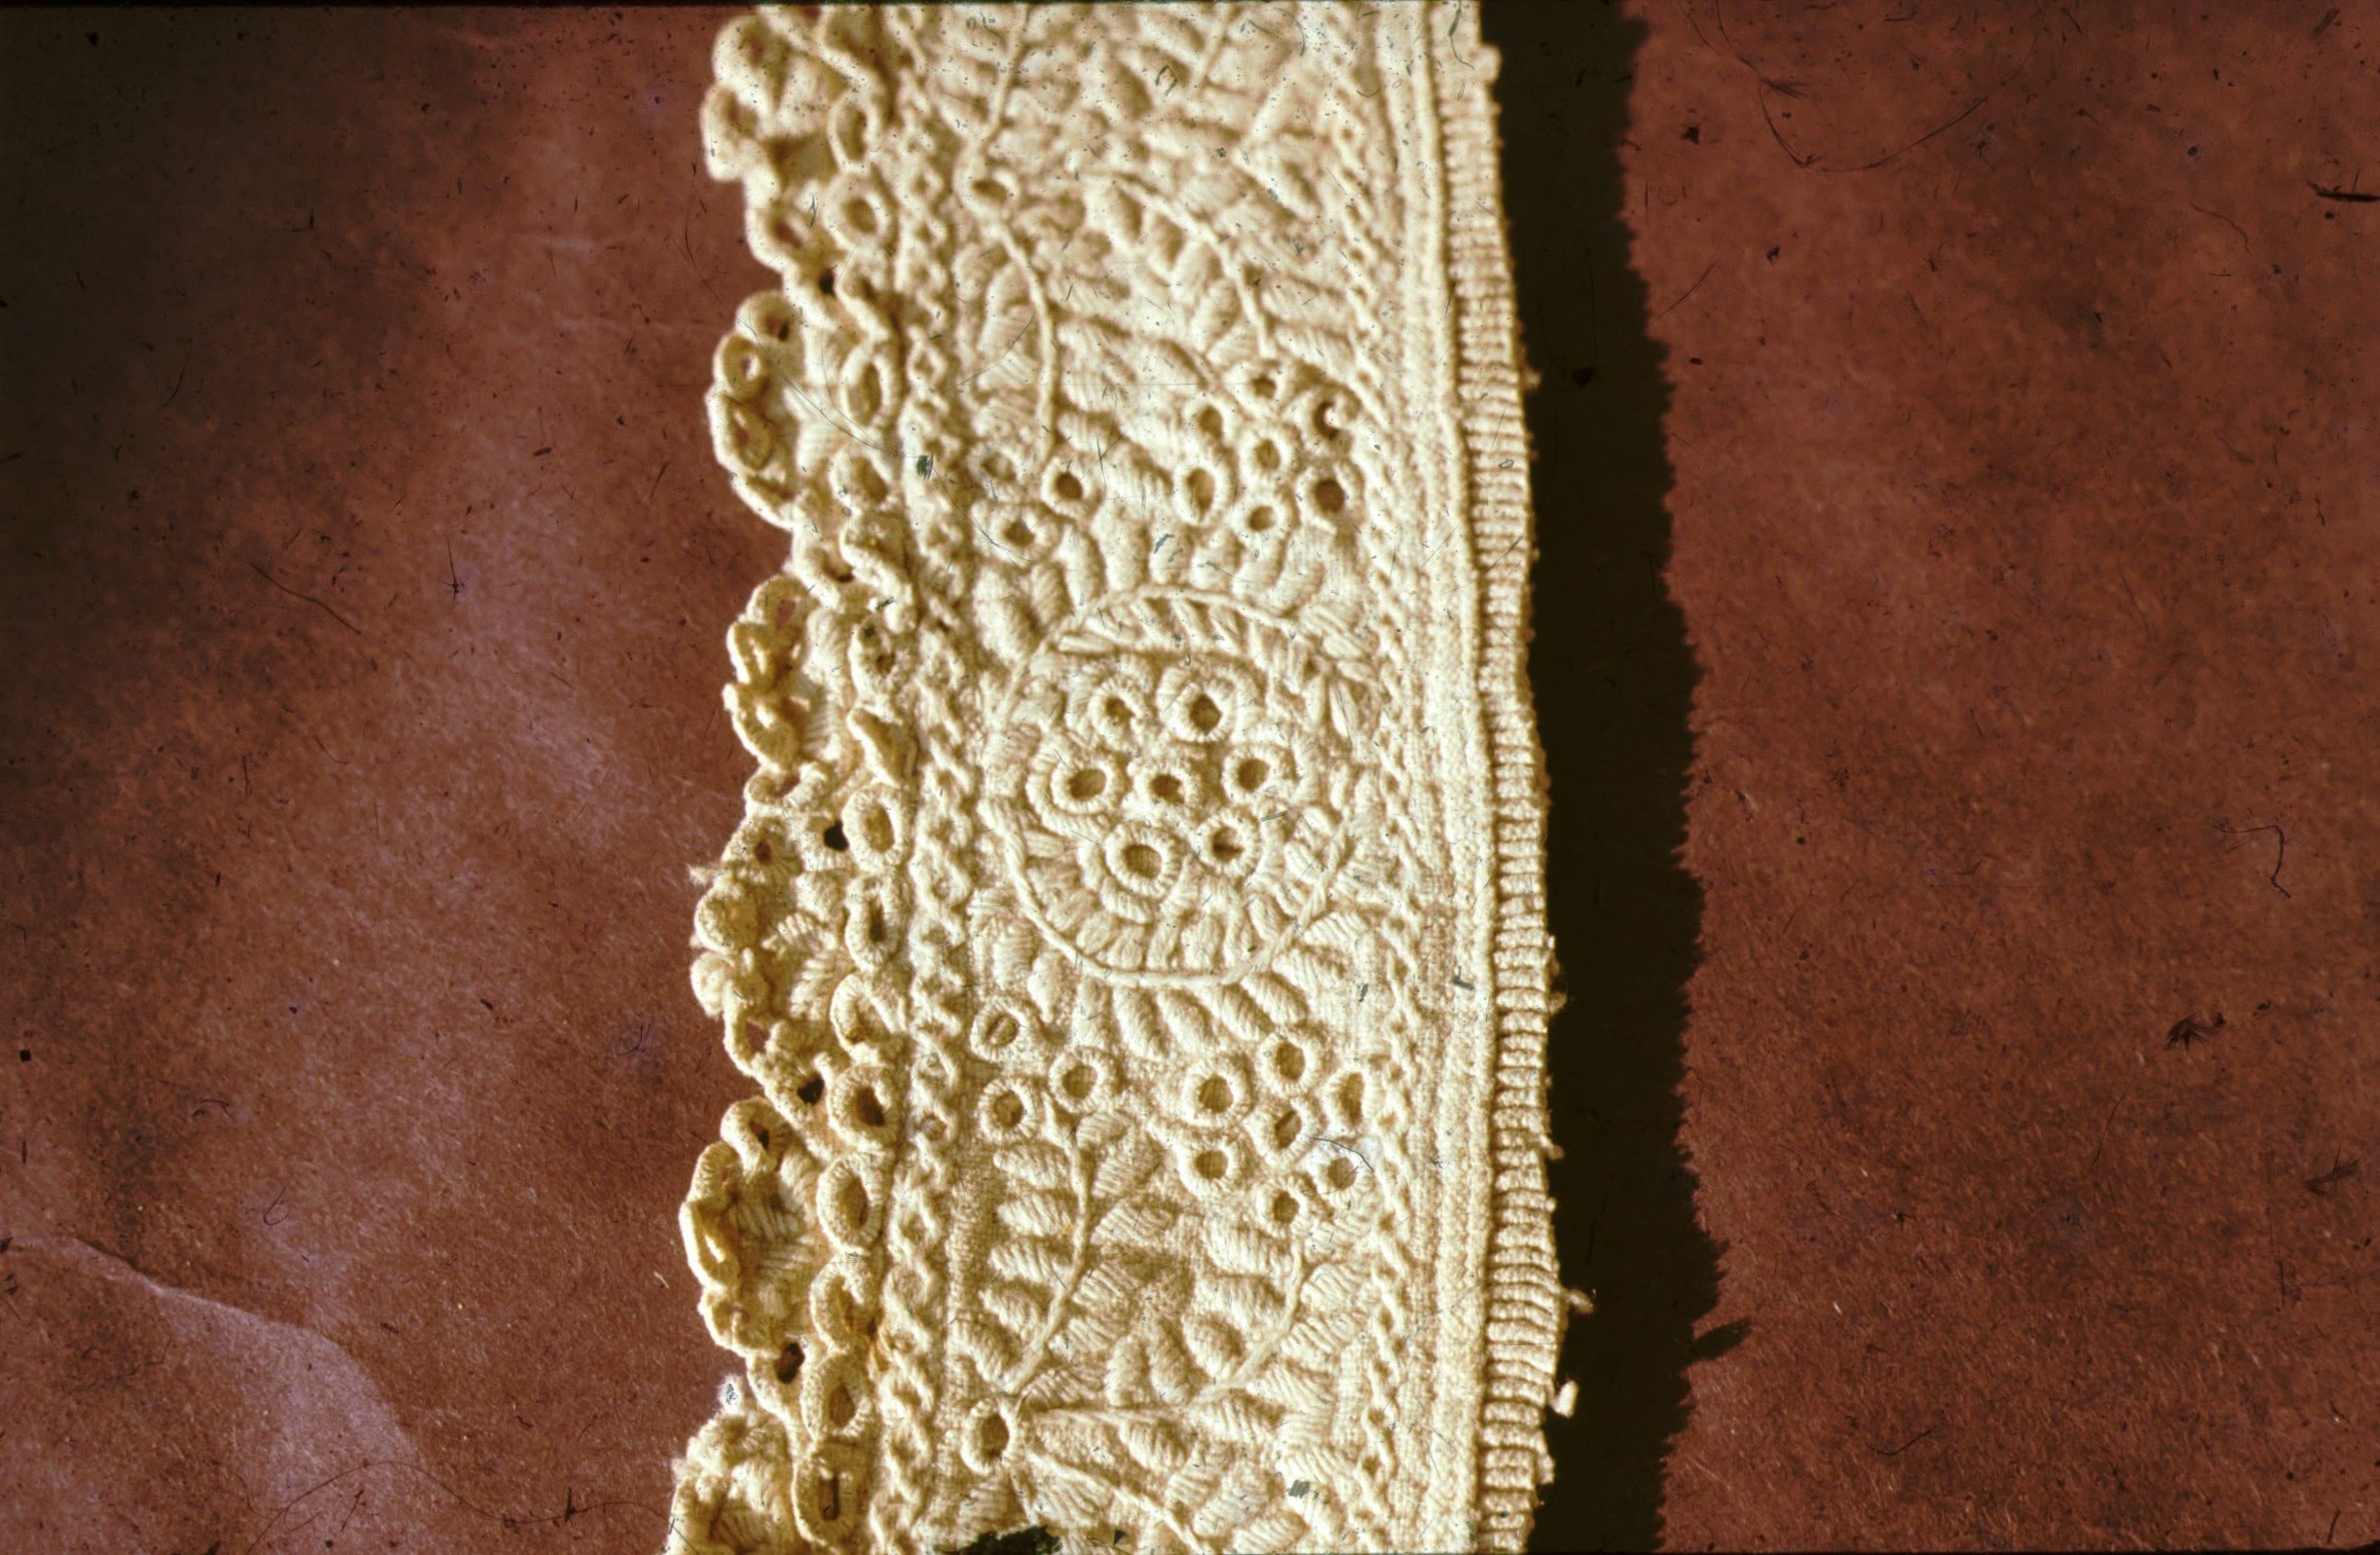 Törökkopányi fehérhímzéses ing kézelője (Rippl-Rónai Múzeum CC BY-NC-ND)